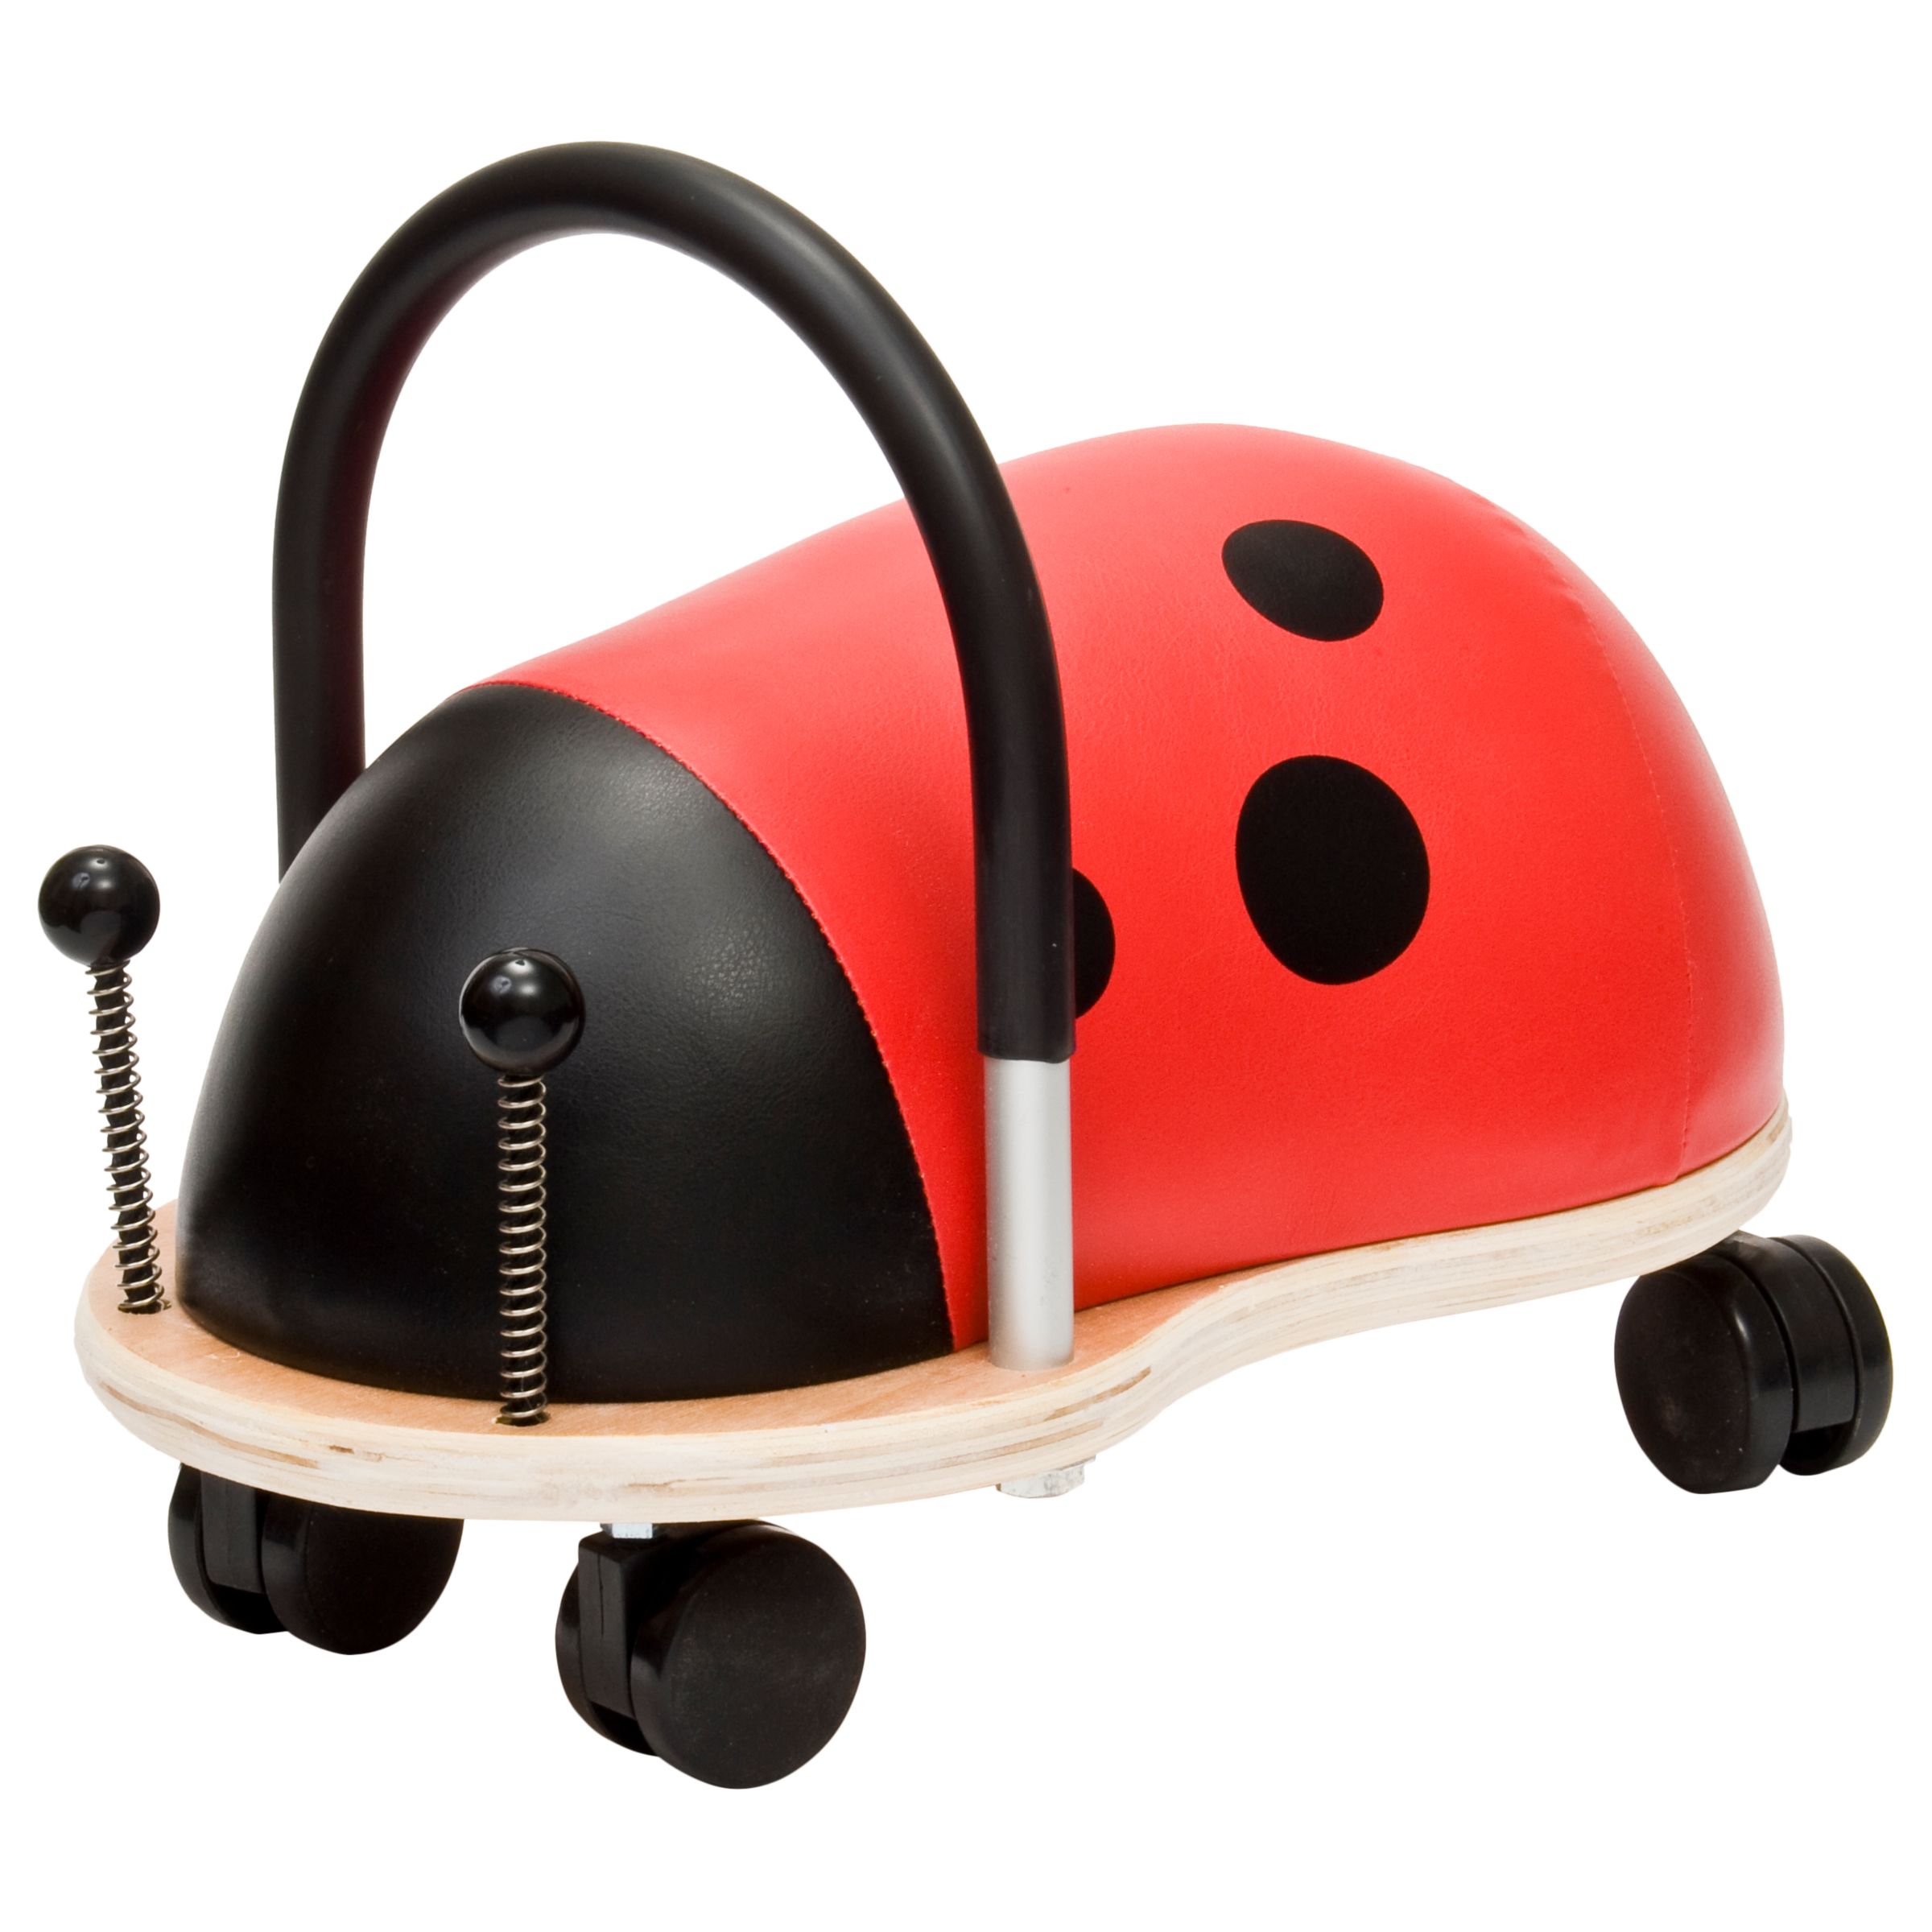 wooden ladybird ride on